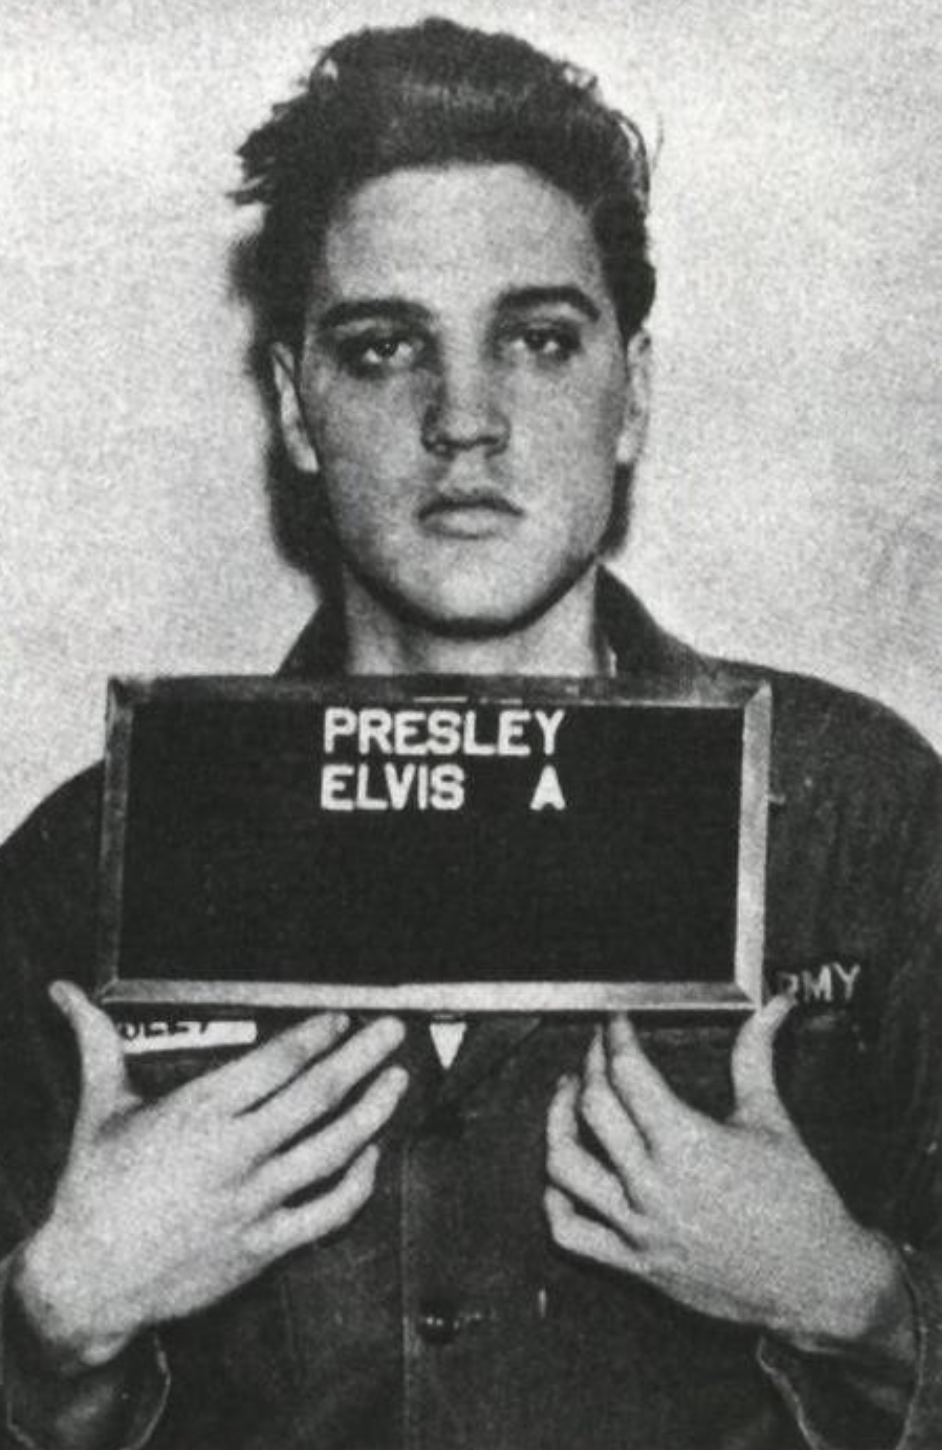 elvis presley mugshot - Presley Elvis A